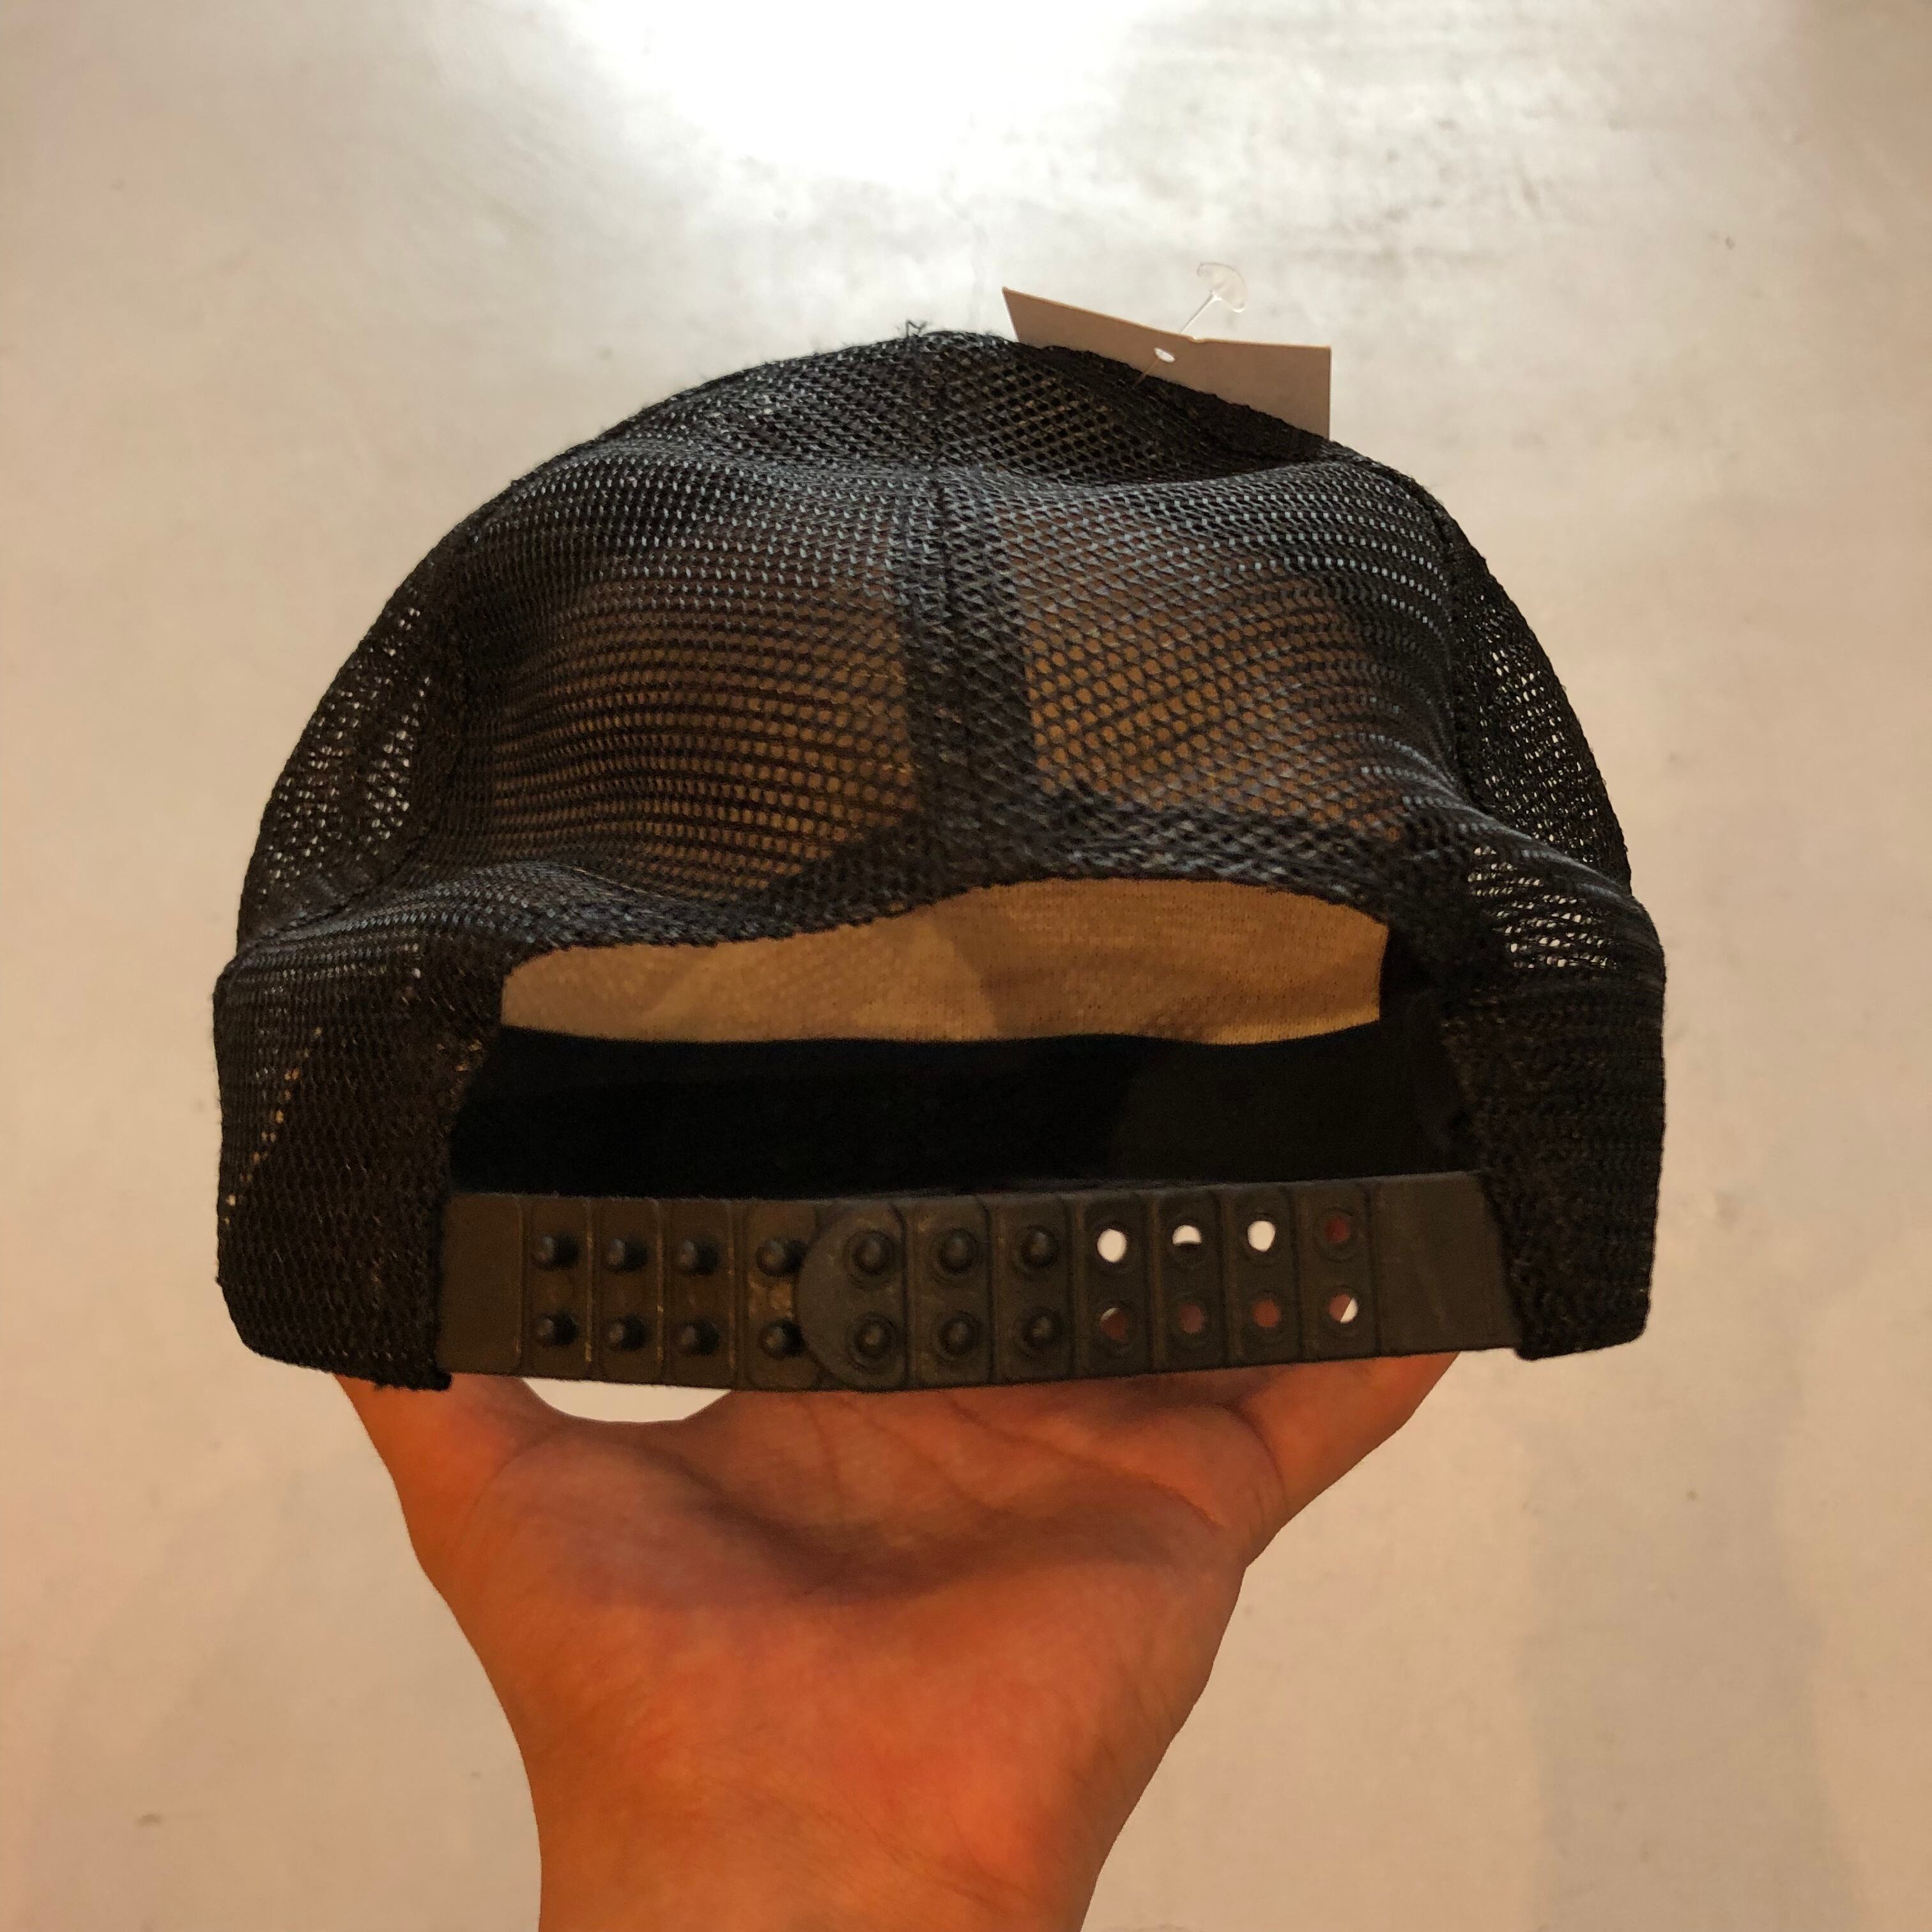 90s miller Genuine Draft  mesh cap